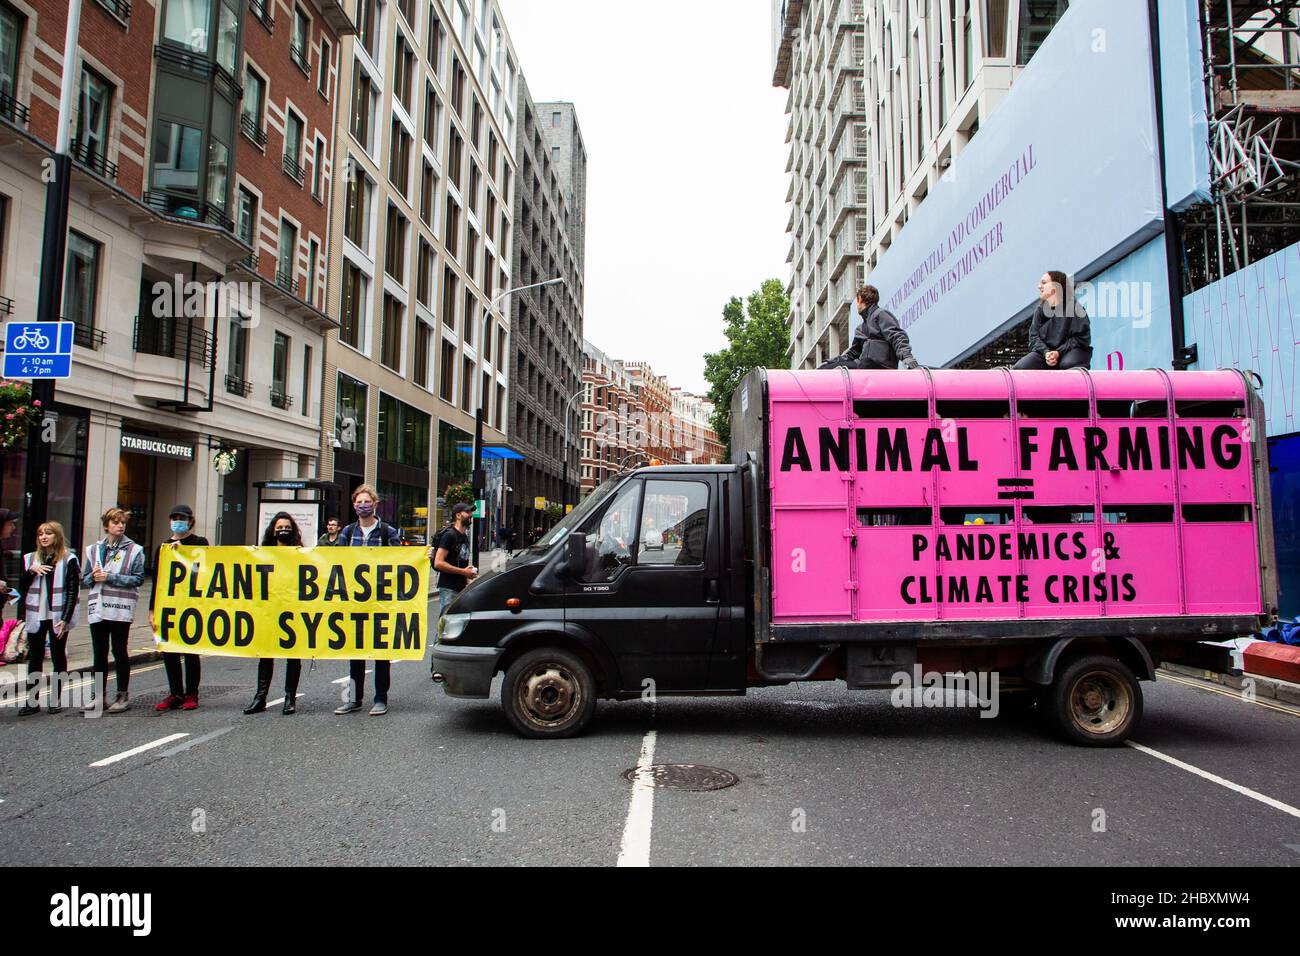 La rébellion animale proteste au-dessus d'un camion d'abattoir rose avec le message Agriculture animale égale les pandémies et crise climatique Londres 2020 Banque D'Images